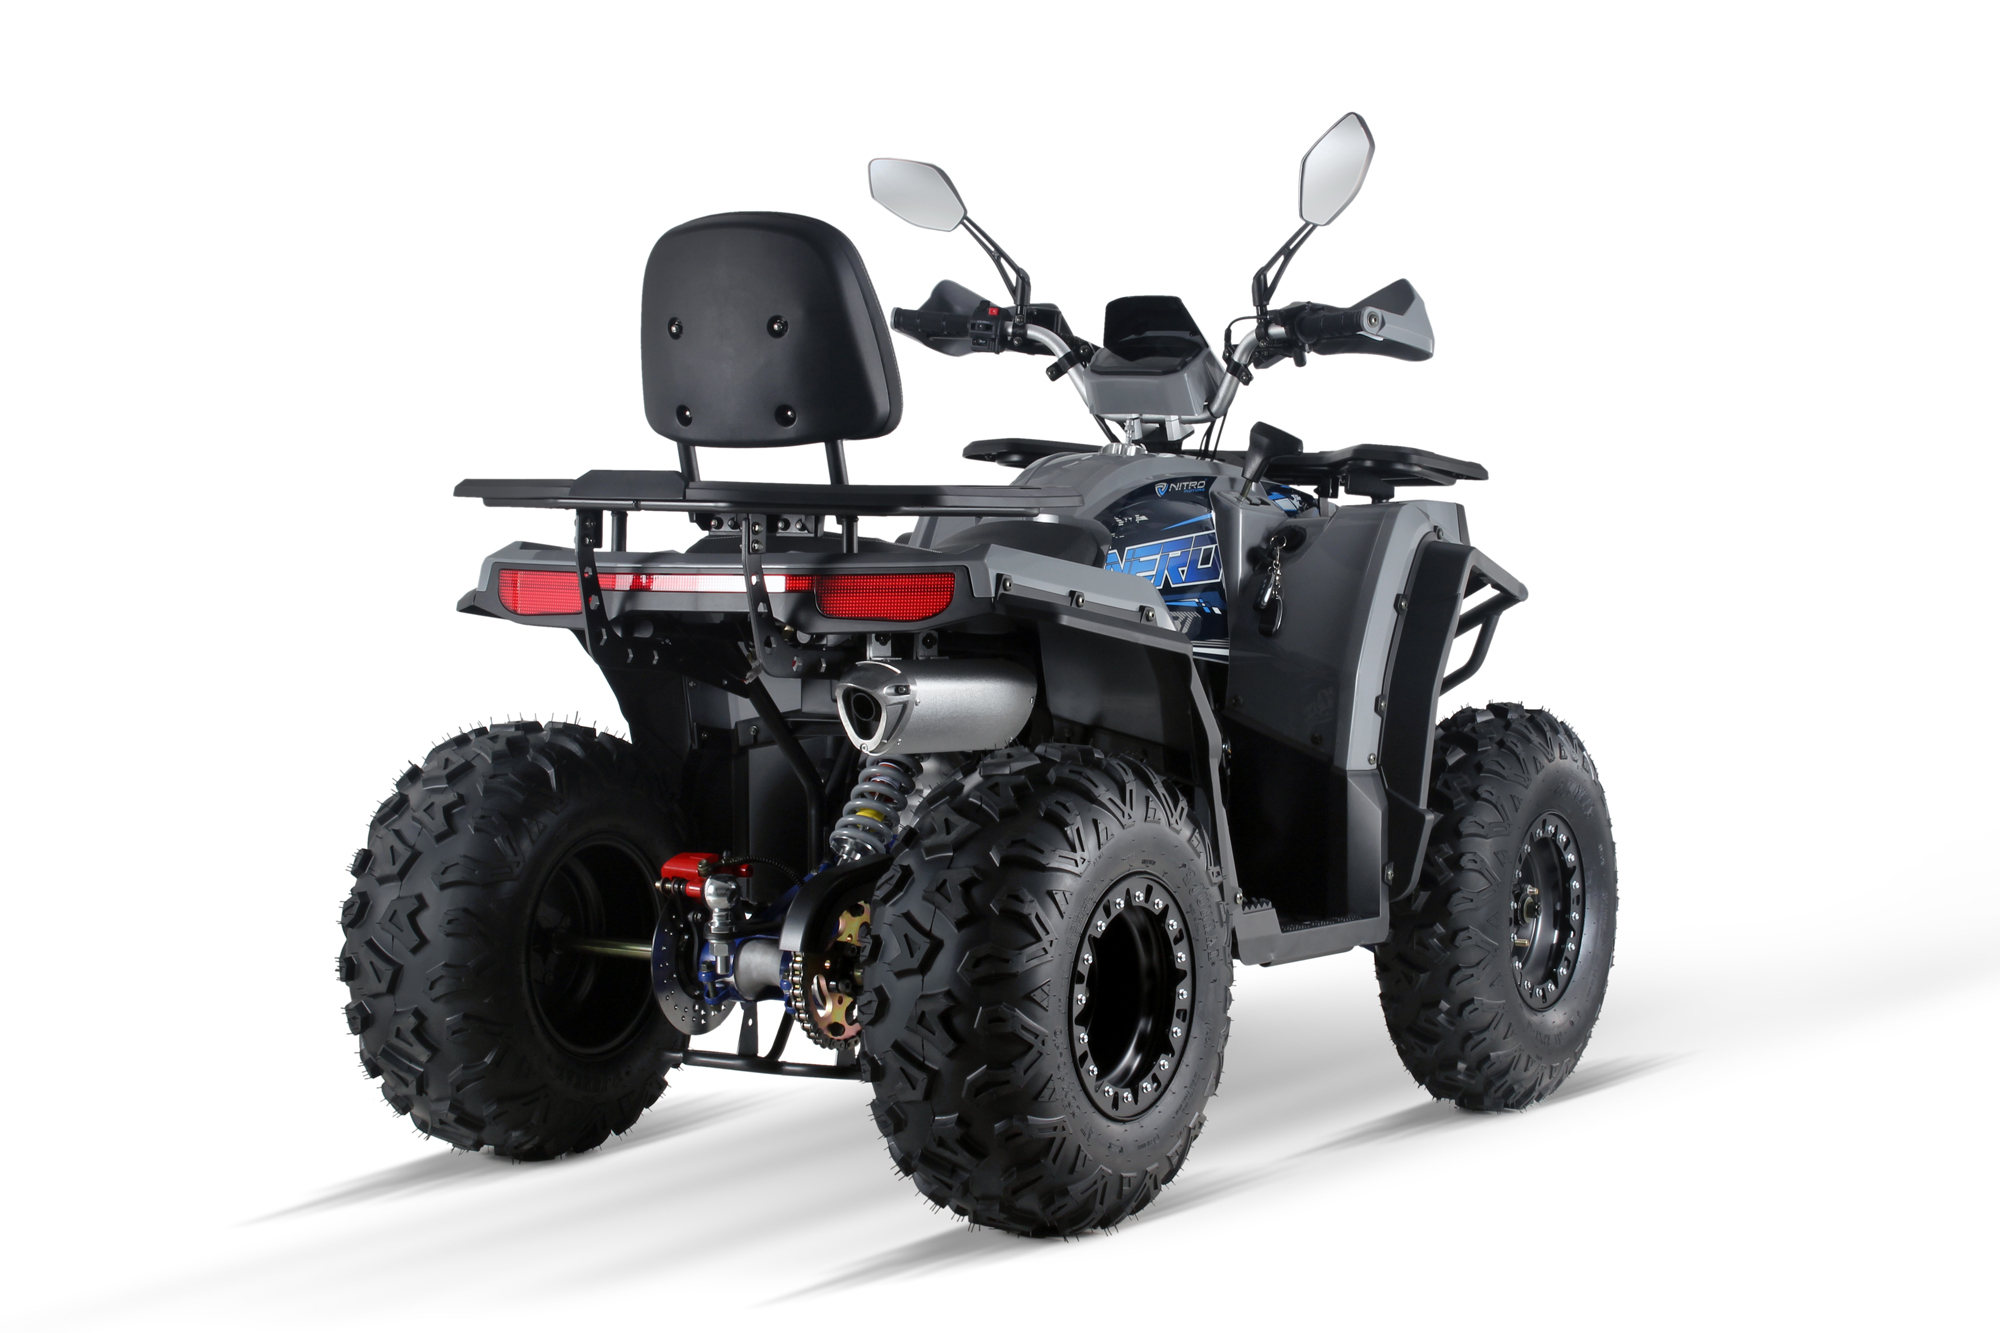 Quad mit Schneeschild ATV 200 cc mit E.Seilwinde 120 cm Schneeschild, Winterquads ohne Straßenzulassung, Quad